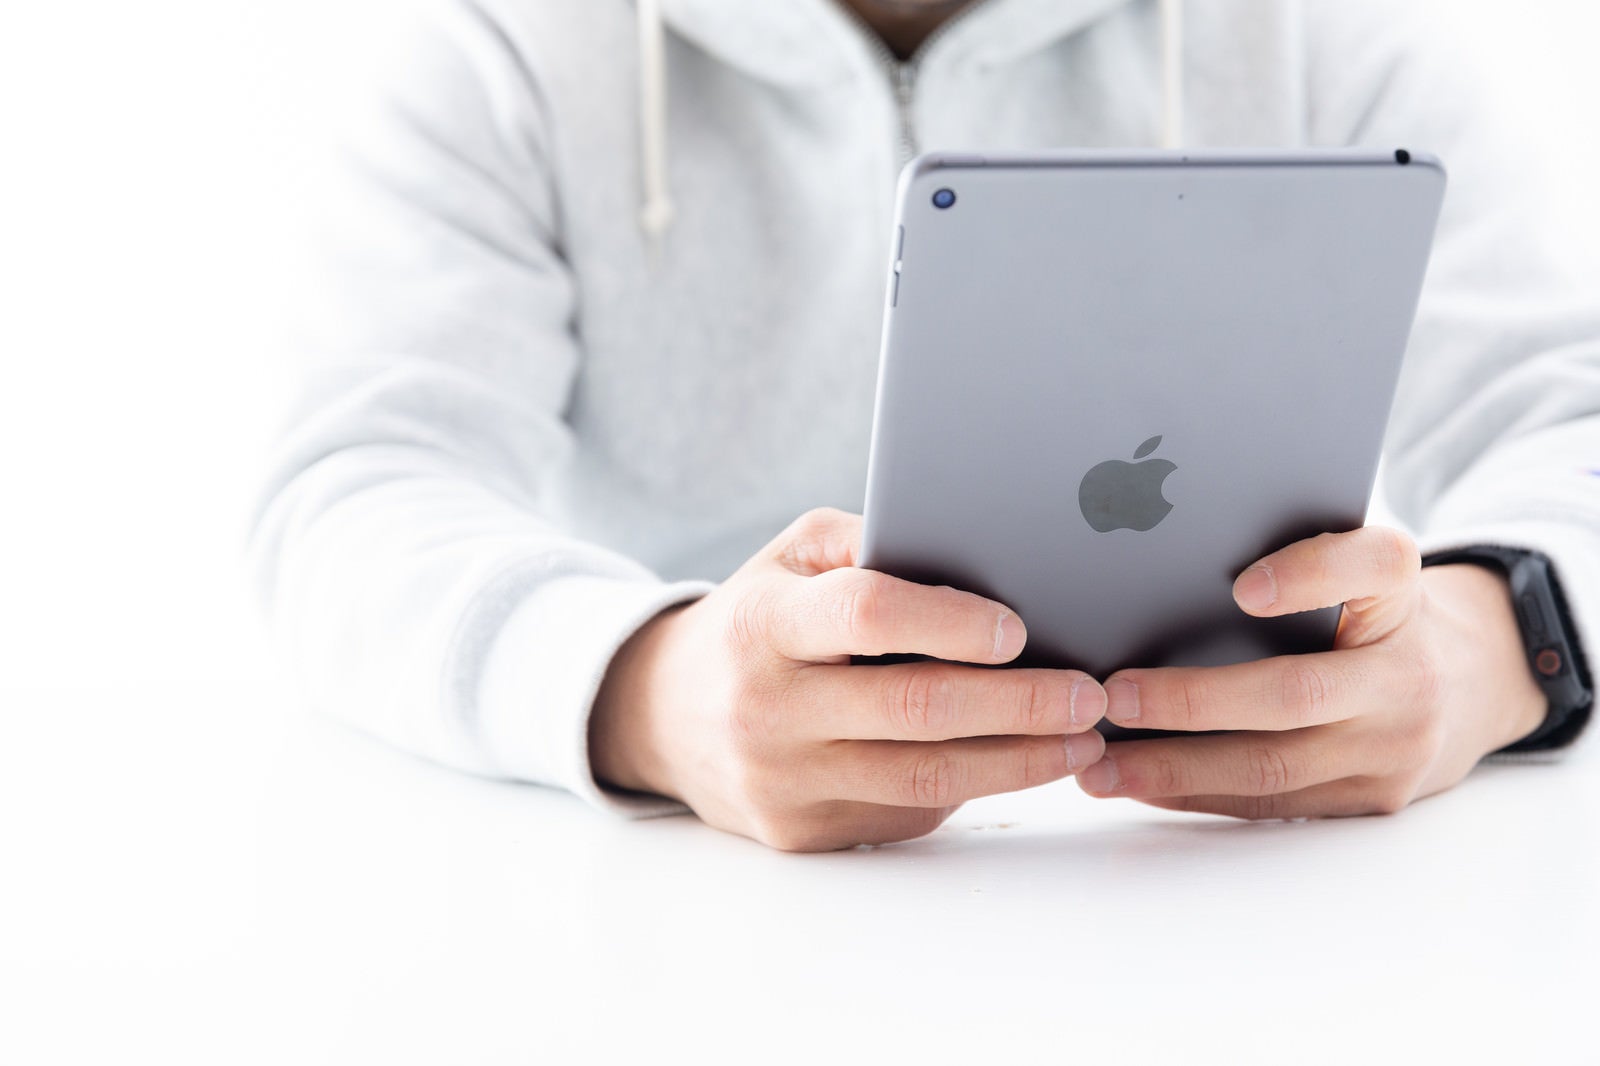 「新型iPadminiを両手で持った感触」の写真